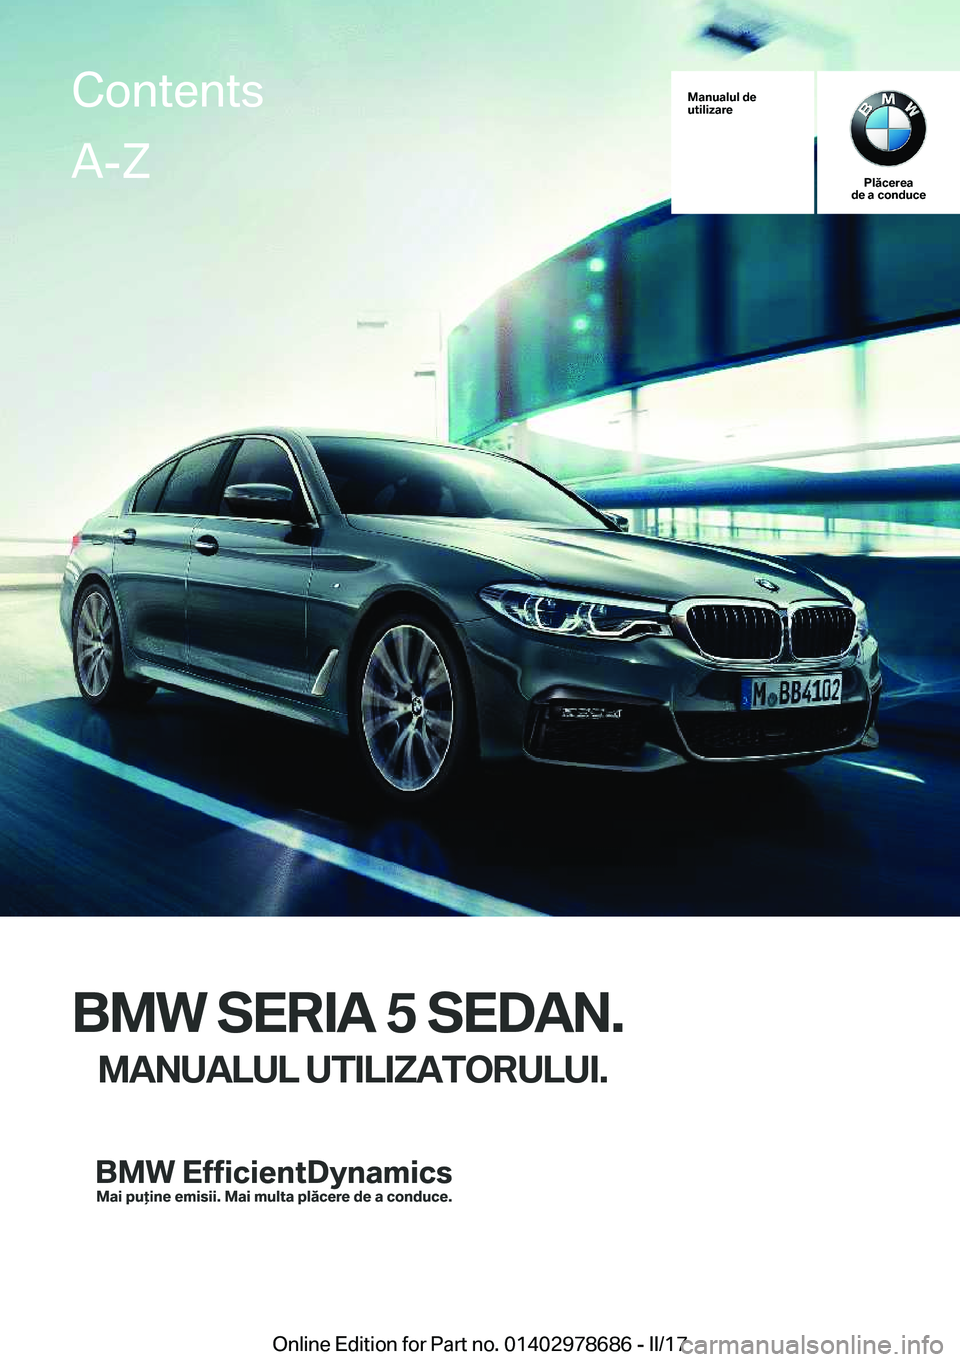 BMW 5 SERIES 2017  Ghiduri De Utilizare (in Romanian) �M�a�n�u�a�l�u�l��d�e
�u�t�i�l�i�z�a�r�e
�P�l�ă�c�e�r�e�a
�d�e��a��c�o�n�d�u�c�e
�B�M�W��S�E�R�I�A��5��S�E�D�A�N�.
�M�A�N�U�A�L�U�L��U�T�I�L�I�Z�A�T�O�R�U�L�U�I�.
�C�o�n�t�e�n�t�s�A�-�Z
�O�n�l